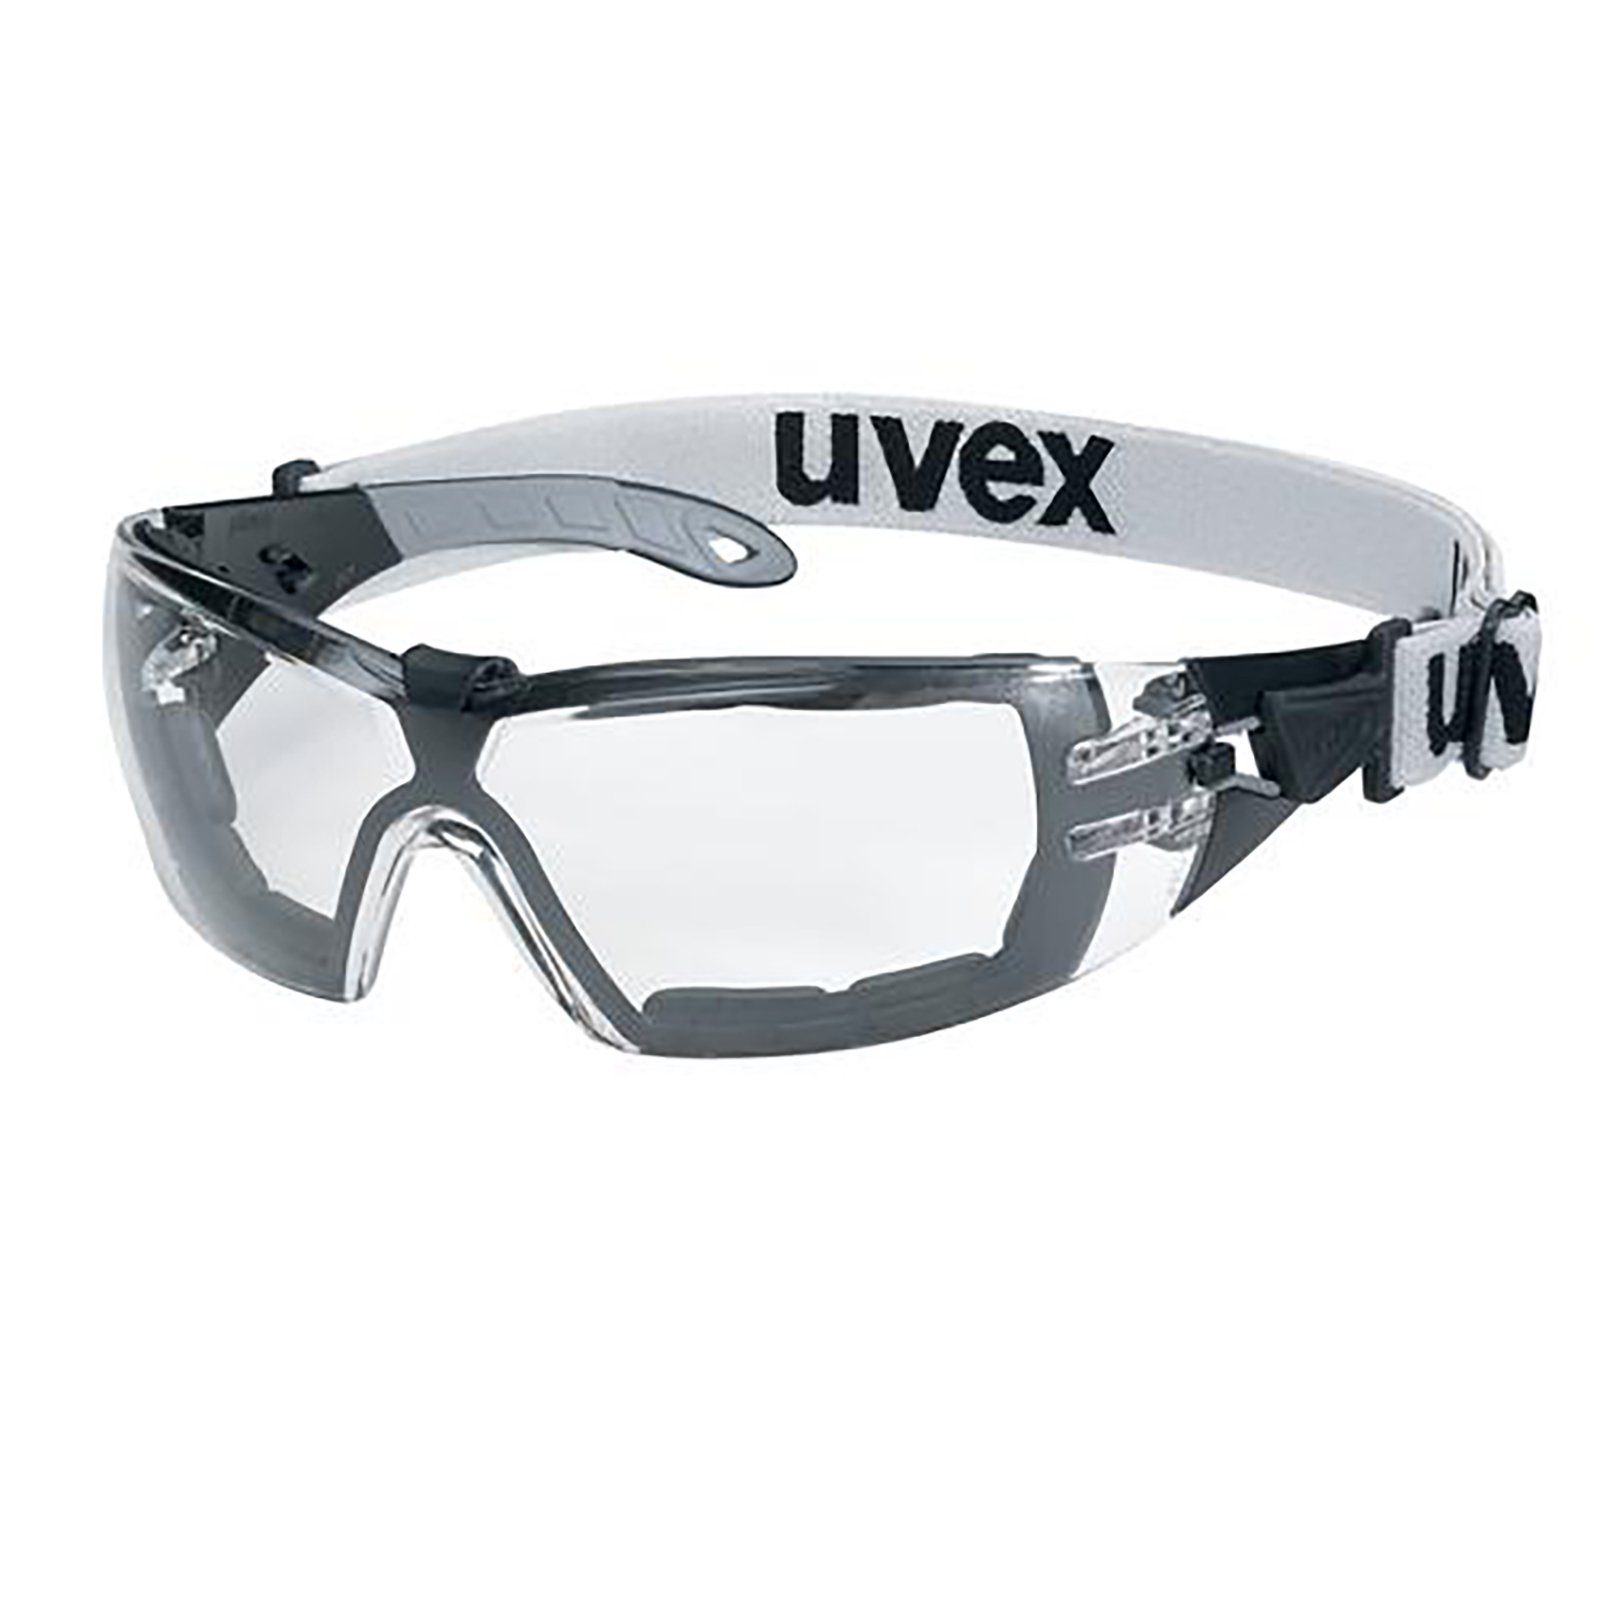 Uvex Arbeitsschutzbrille Bügelbrille pheos guard sv ext. 9192180 | Schutzbrillen